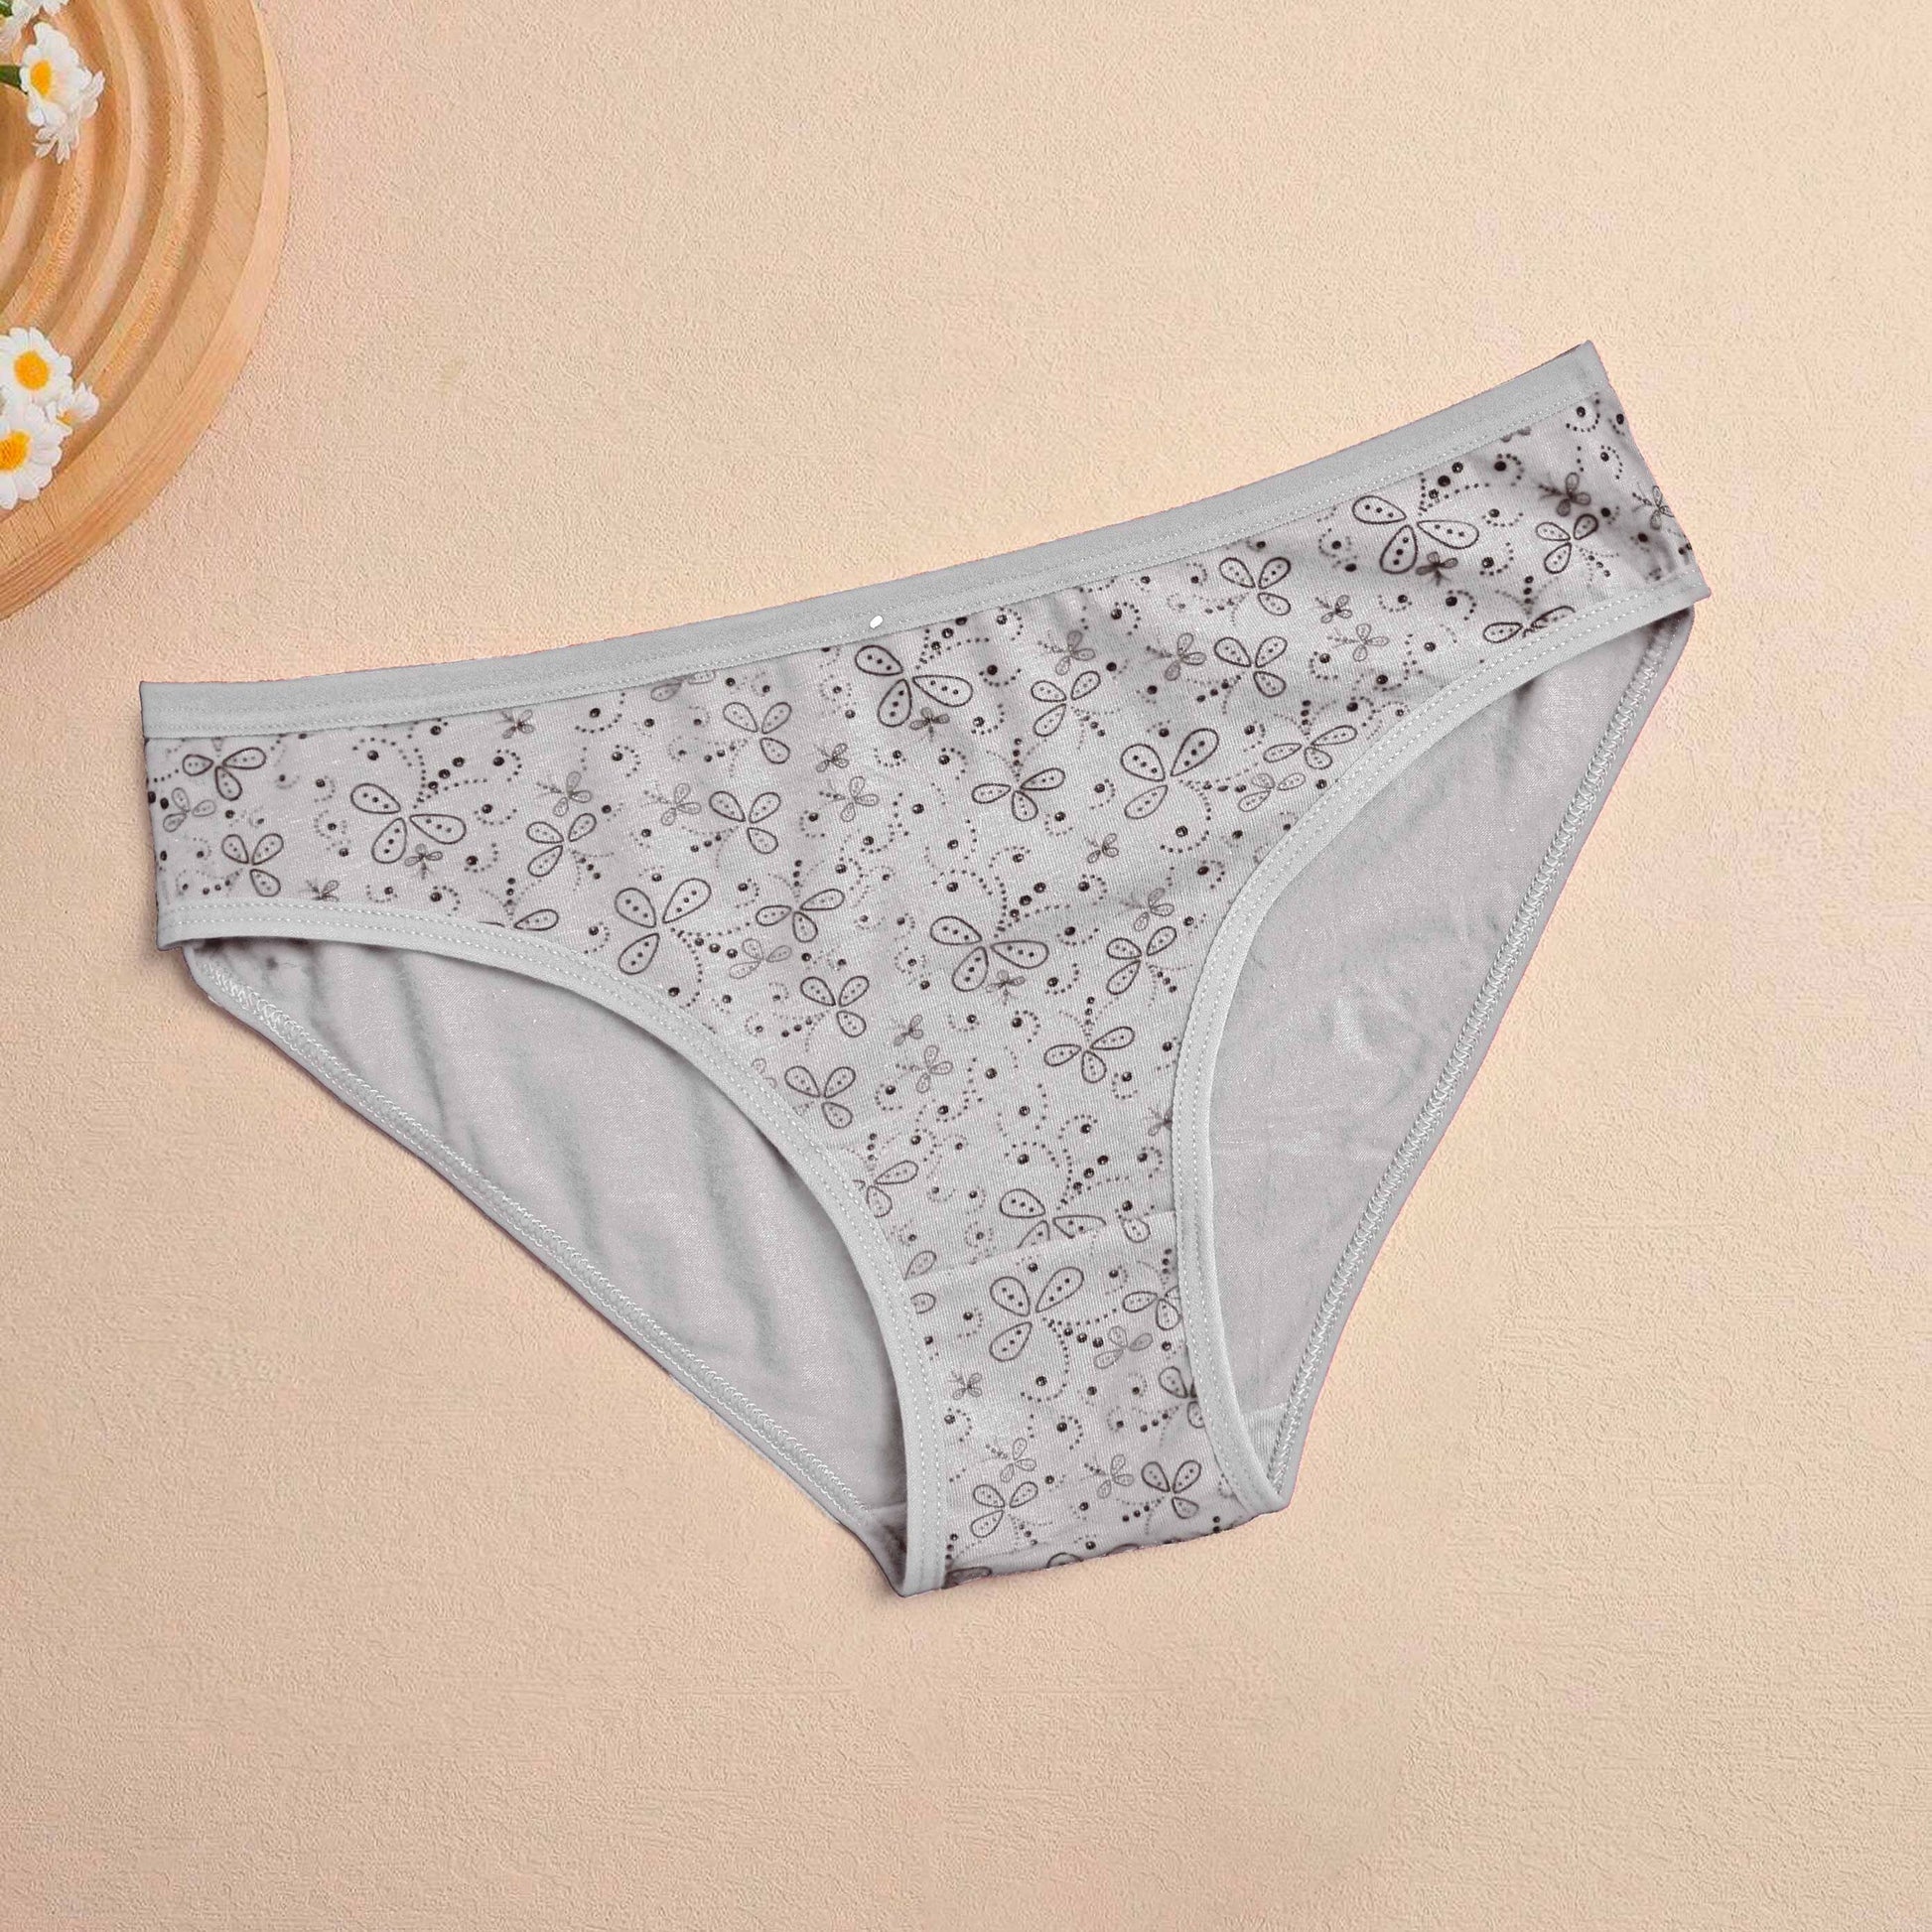 Hmeng Women's Printed Underwear Women's Lingerie SRL Grey S 